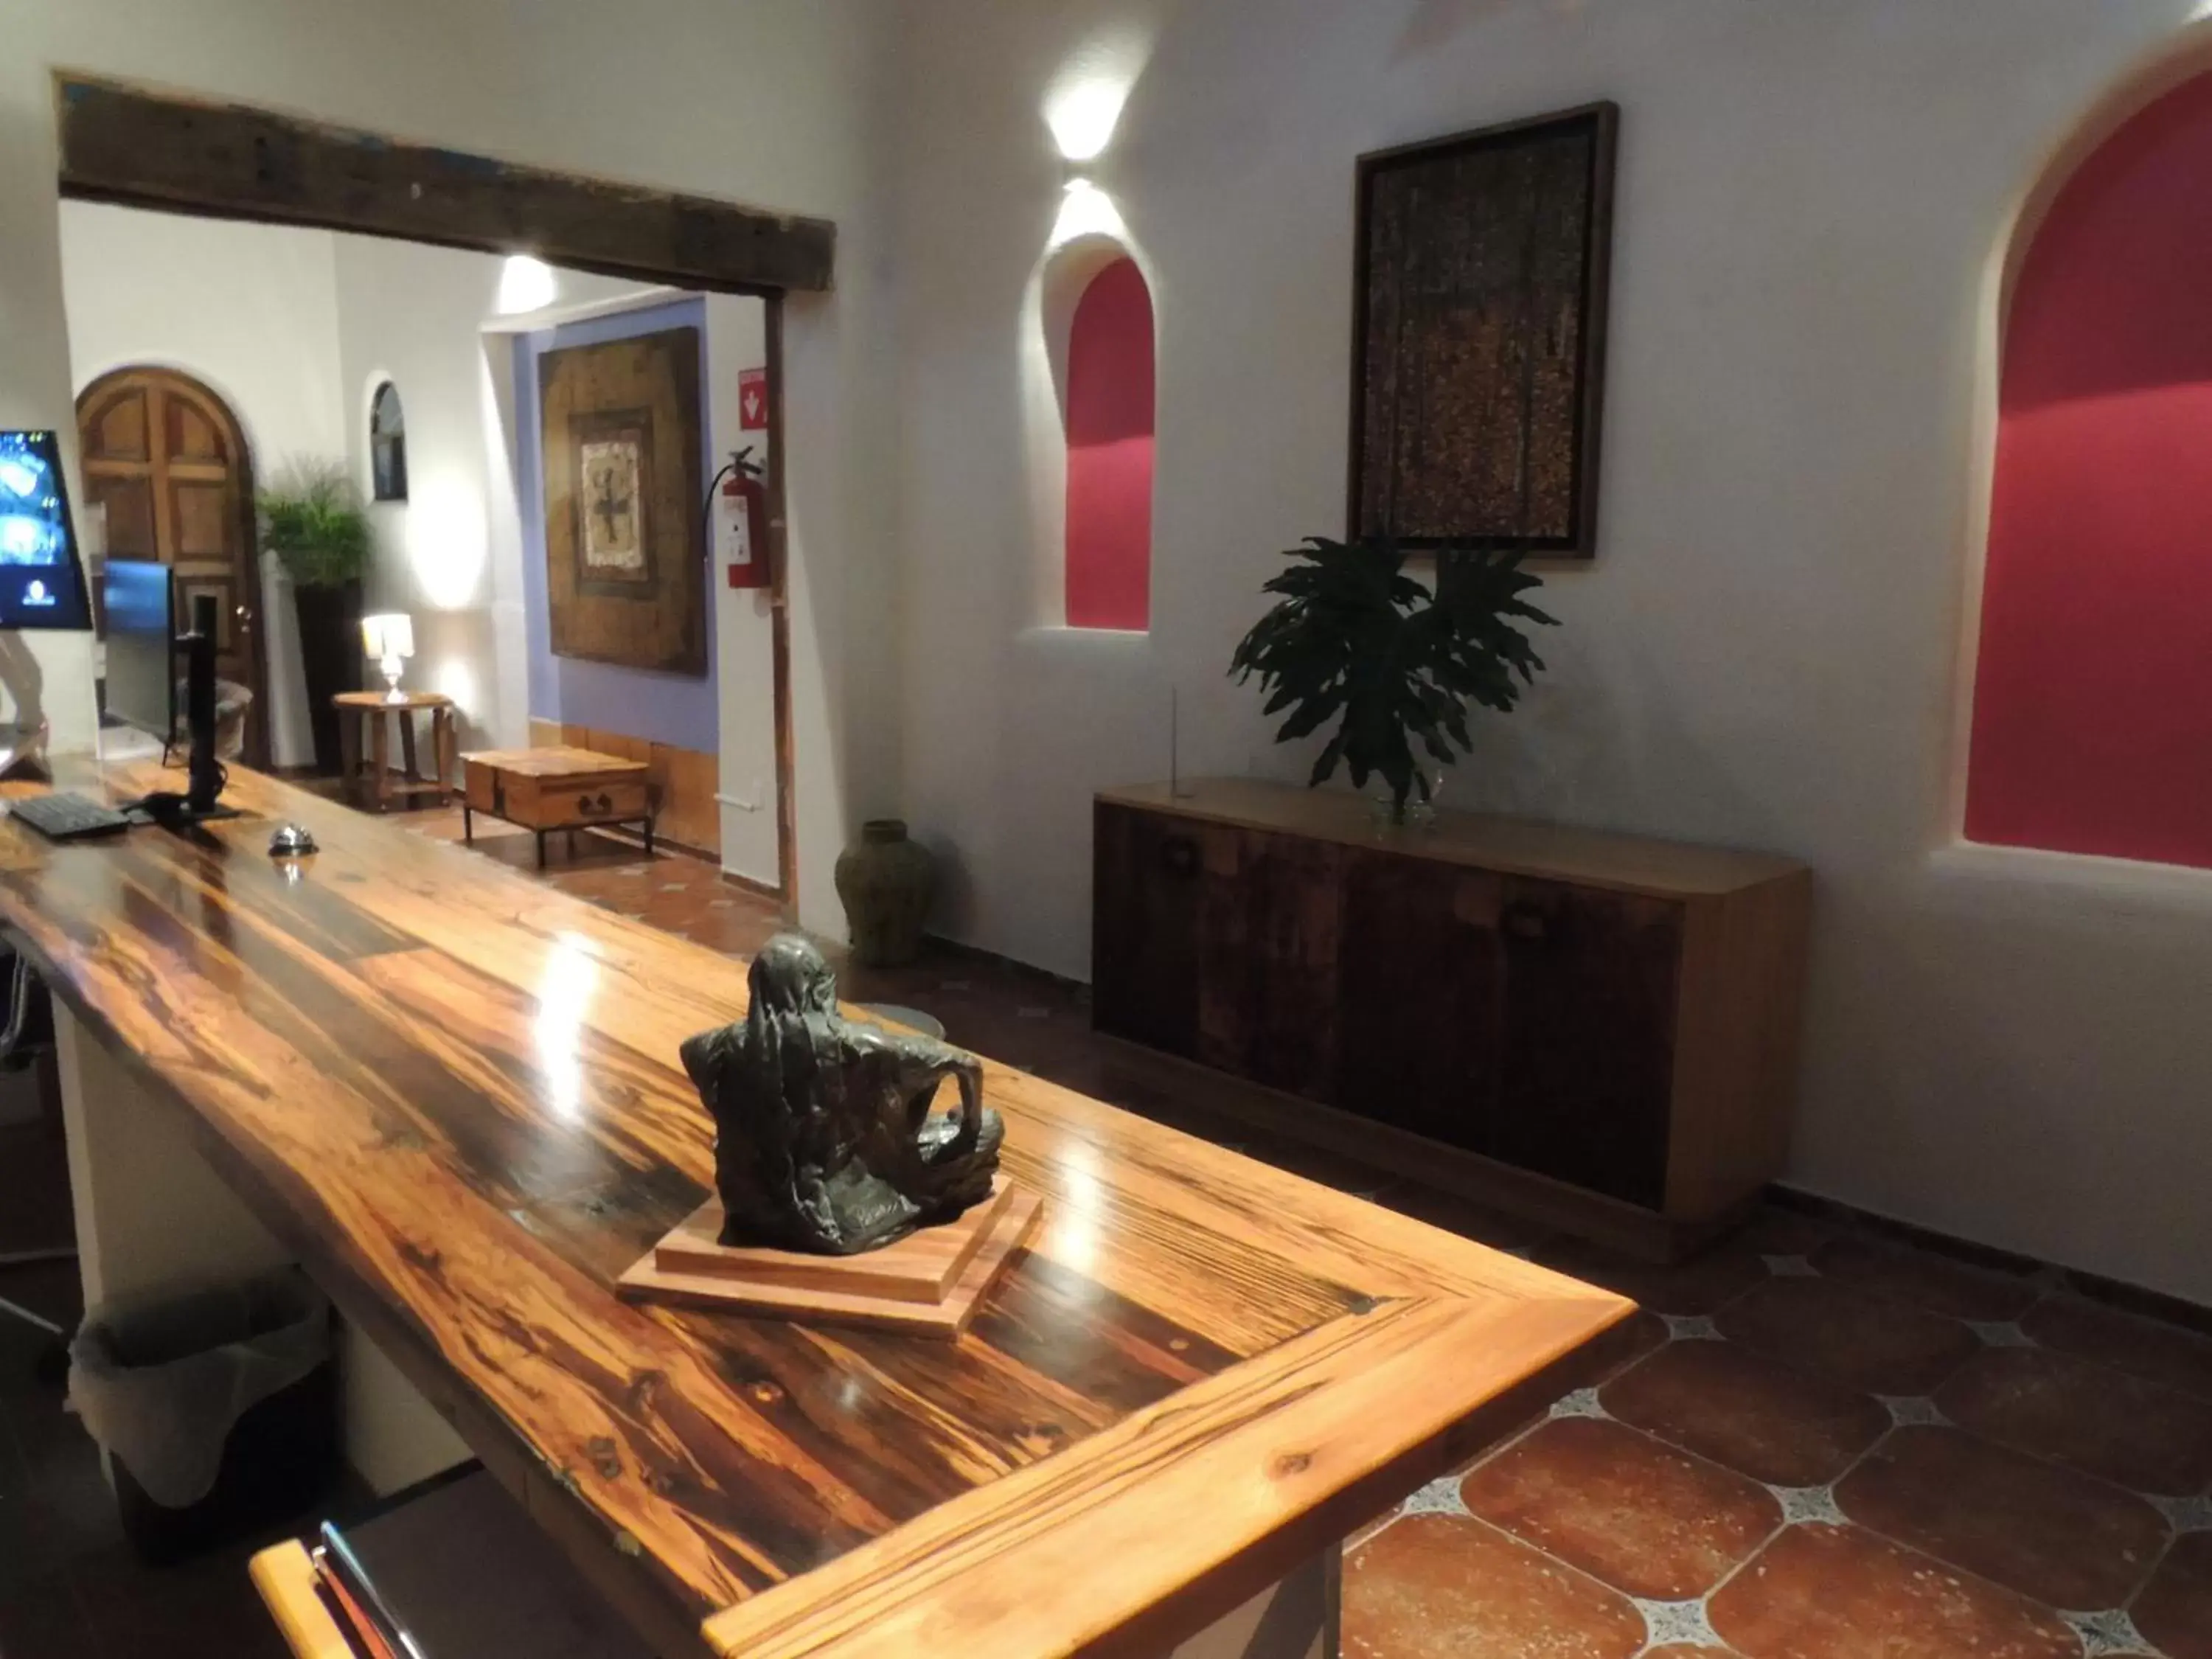 Lobby or reception in Hotel Casa Tequis San Luis Potosi